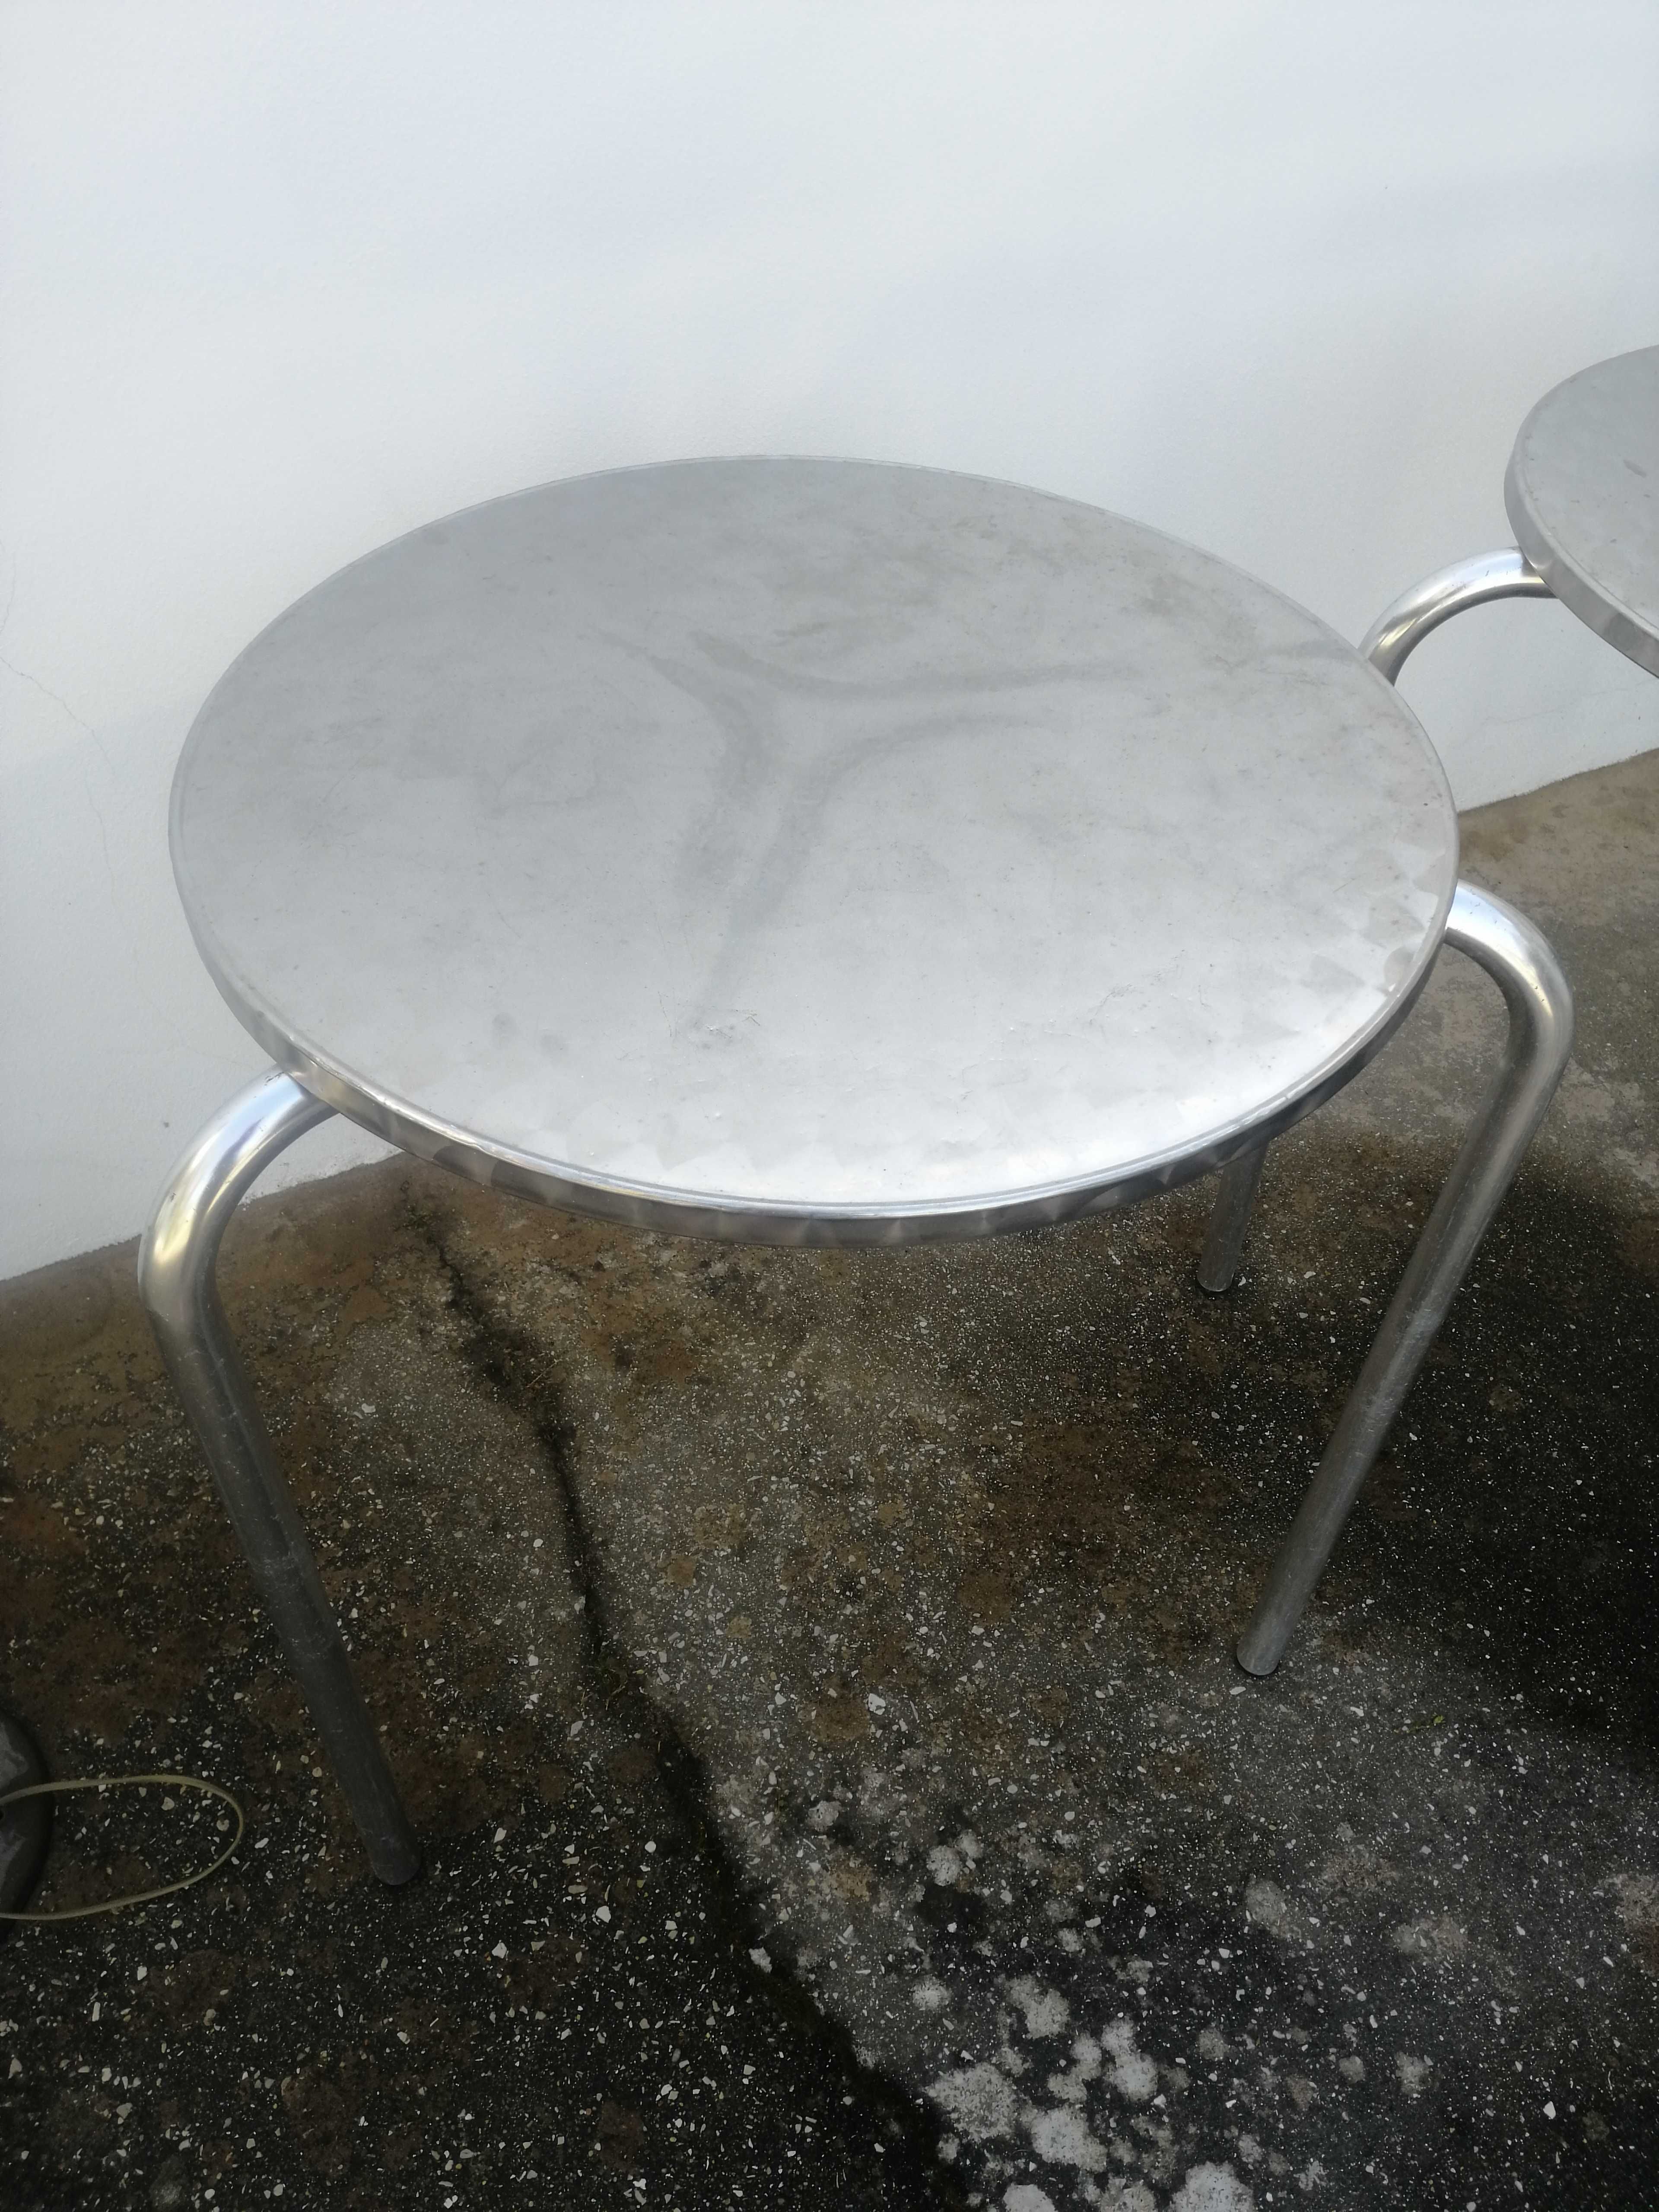 2 Mesas esplanada alumínio